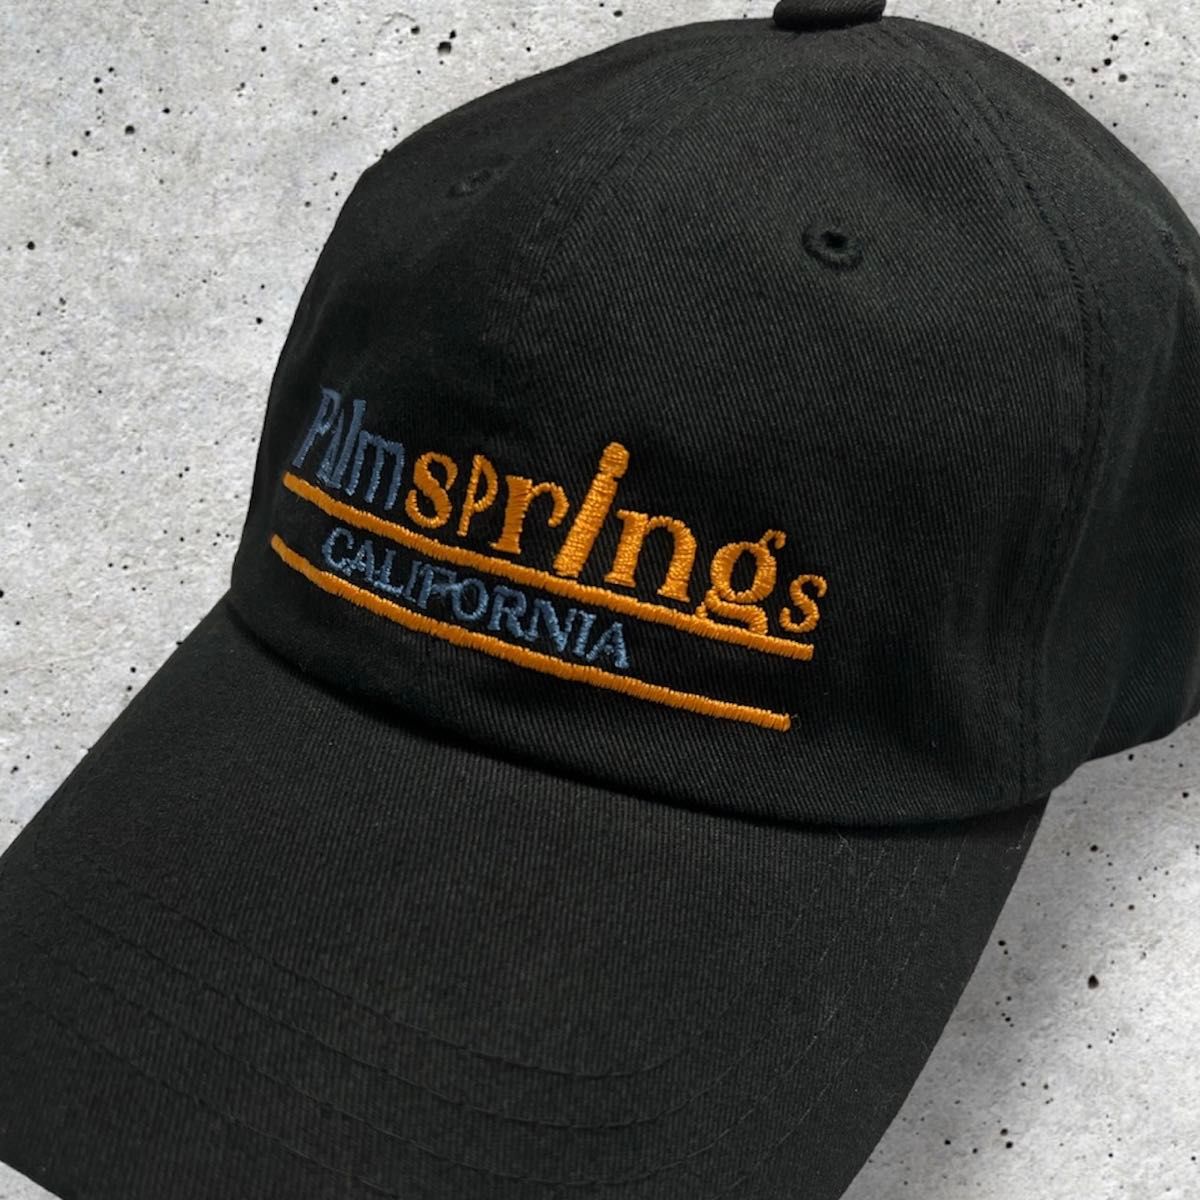 Palm springs 刺繍 ロゴ ベースボールキャップ ブラック 帽子 黒 キャップ ヴィンテージ ストリート